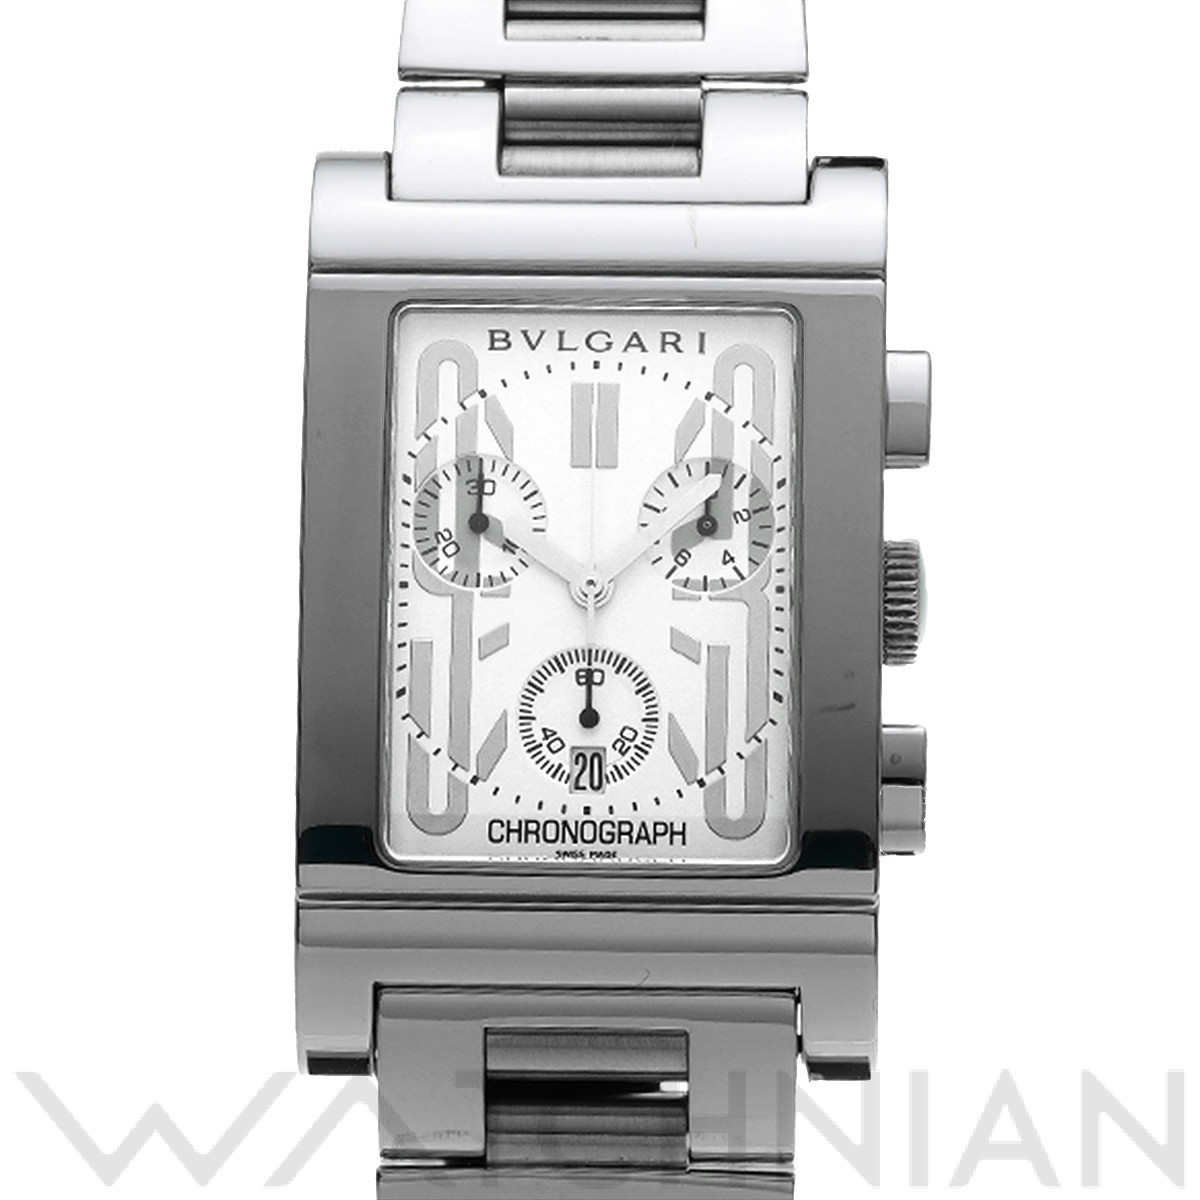 ブルガリ / BVLGARI レッタンゴロ クロノグラフ RTC49S ホワイト メンズ 時計 【中古】【wristwatch】